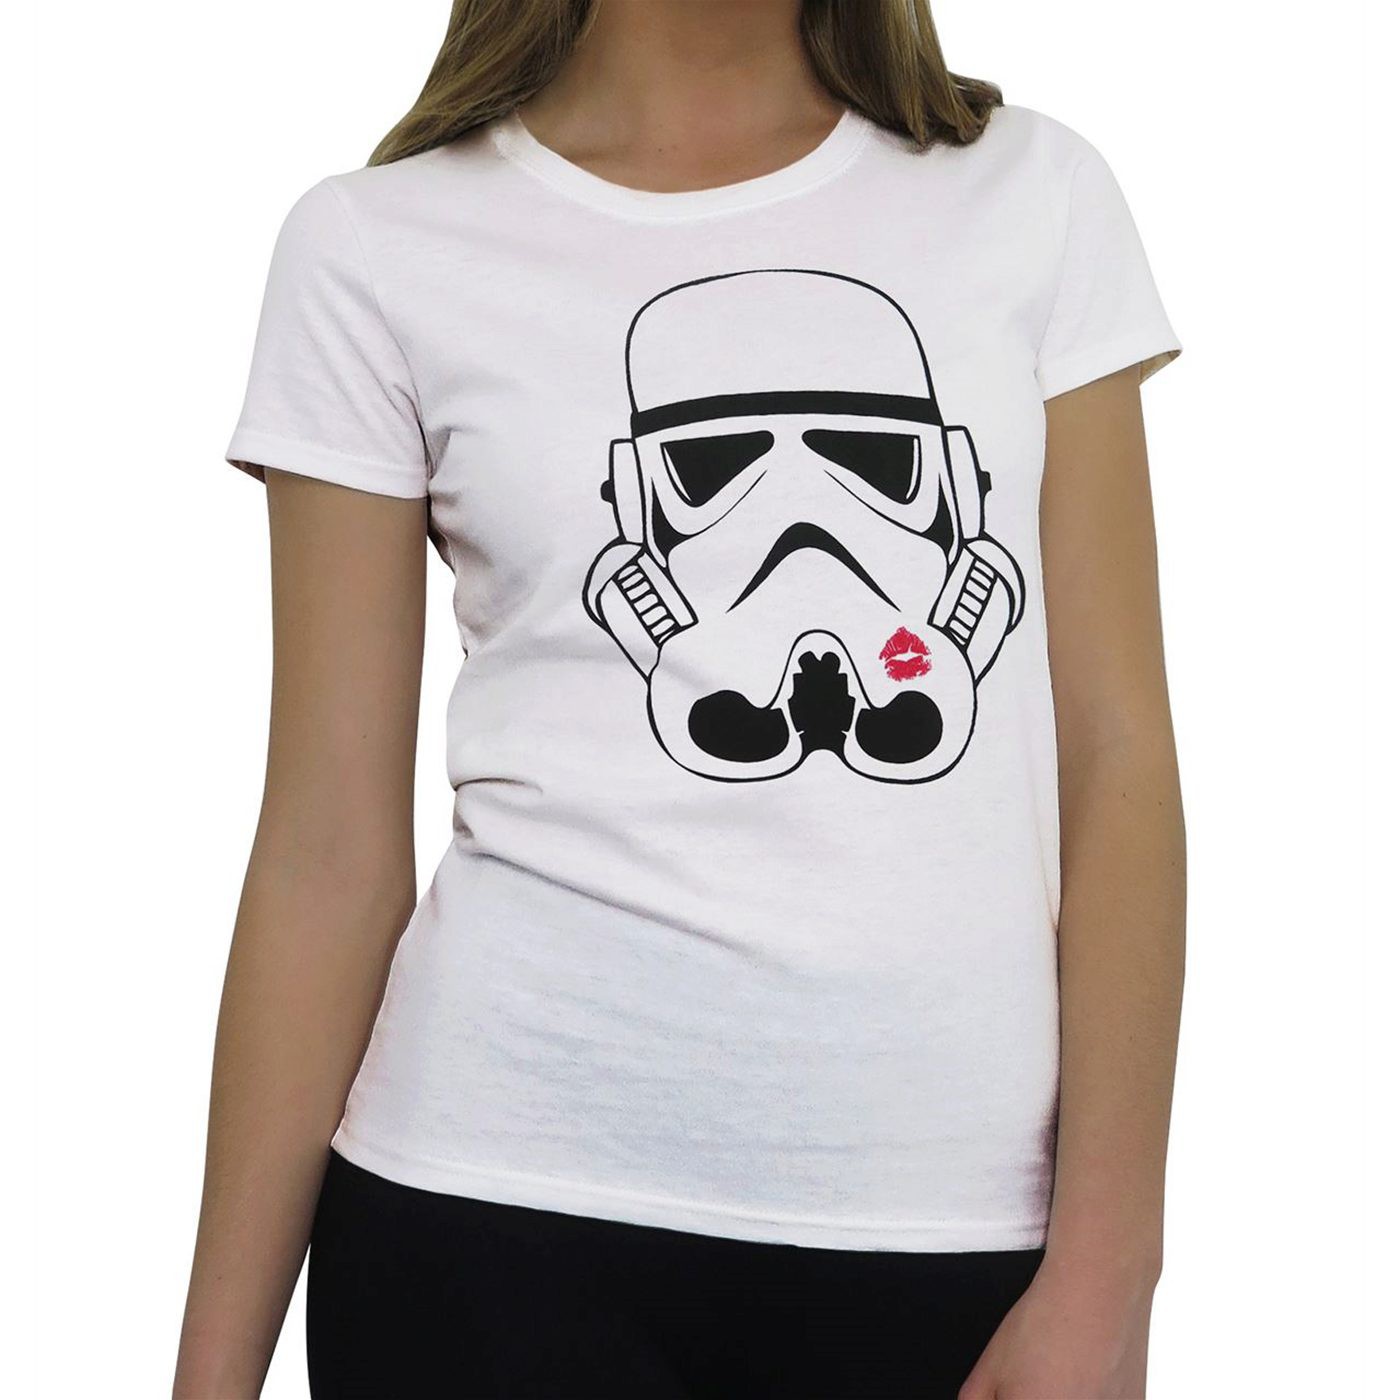 stormtrooper shirt womens